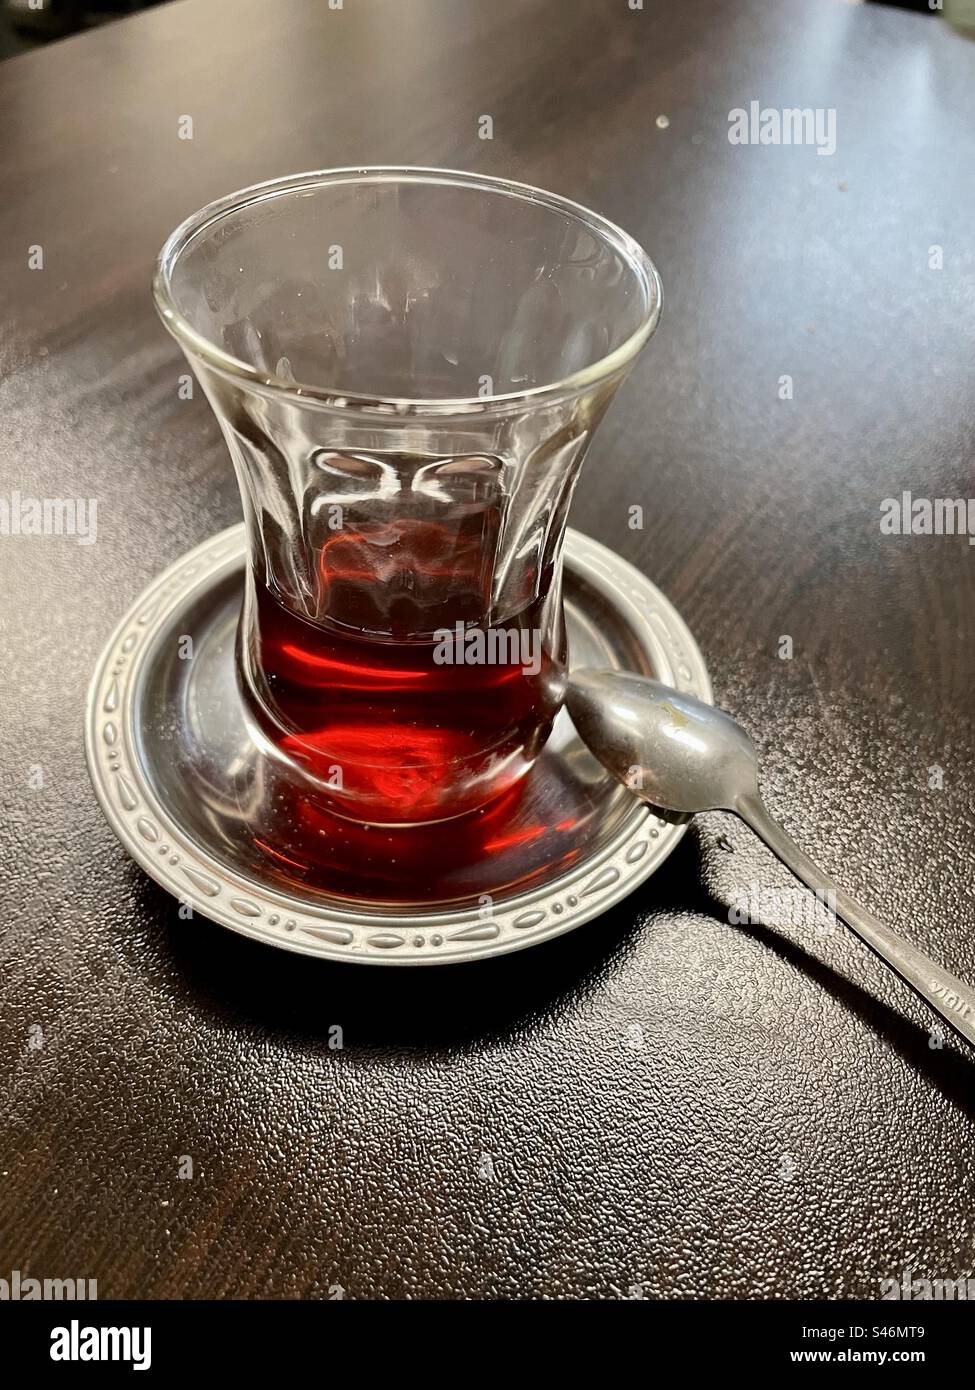 Il bicchiere "ince belli" mezzo ripieno mostra la ricca tonalità del tè nero, invitando un viaggio sensoriale ad ogni sorso. Foto Stock